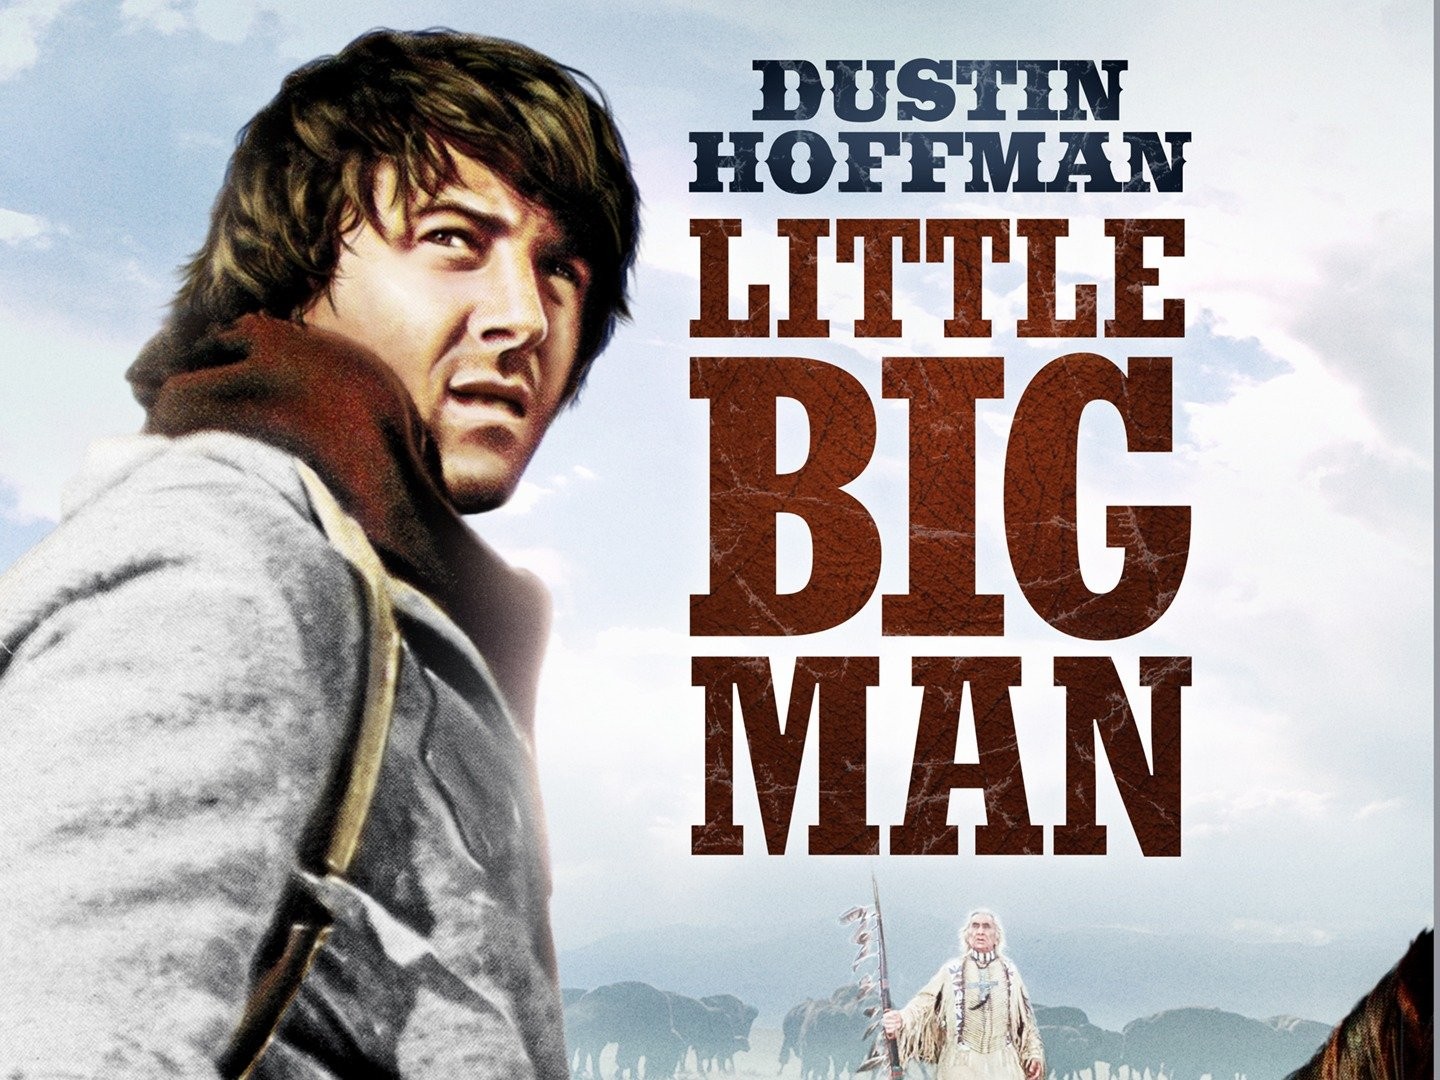 Little Big Man (film) - Wikipedia